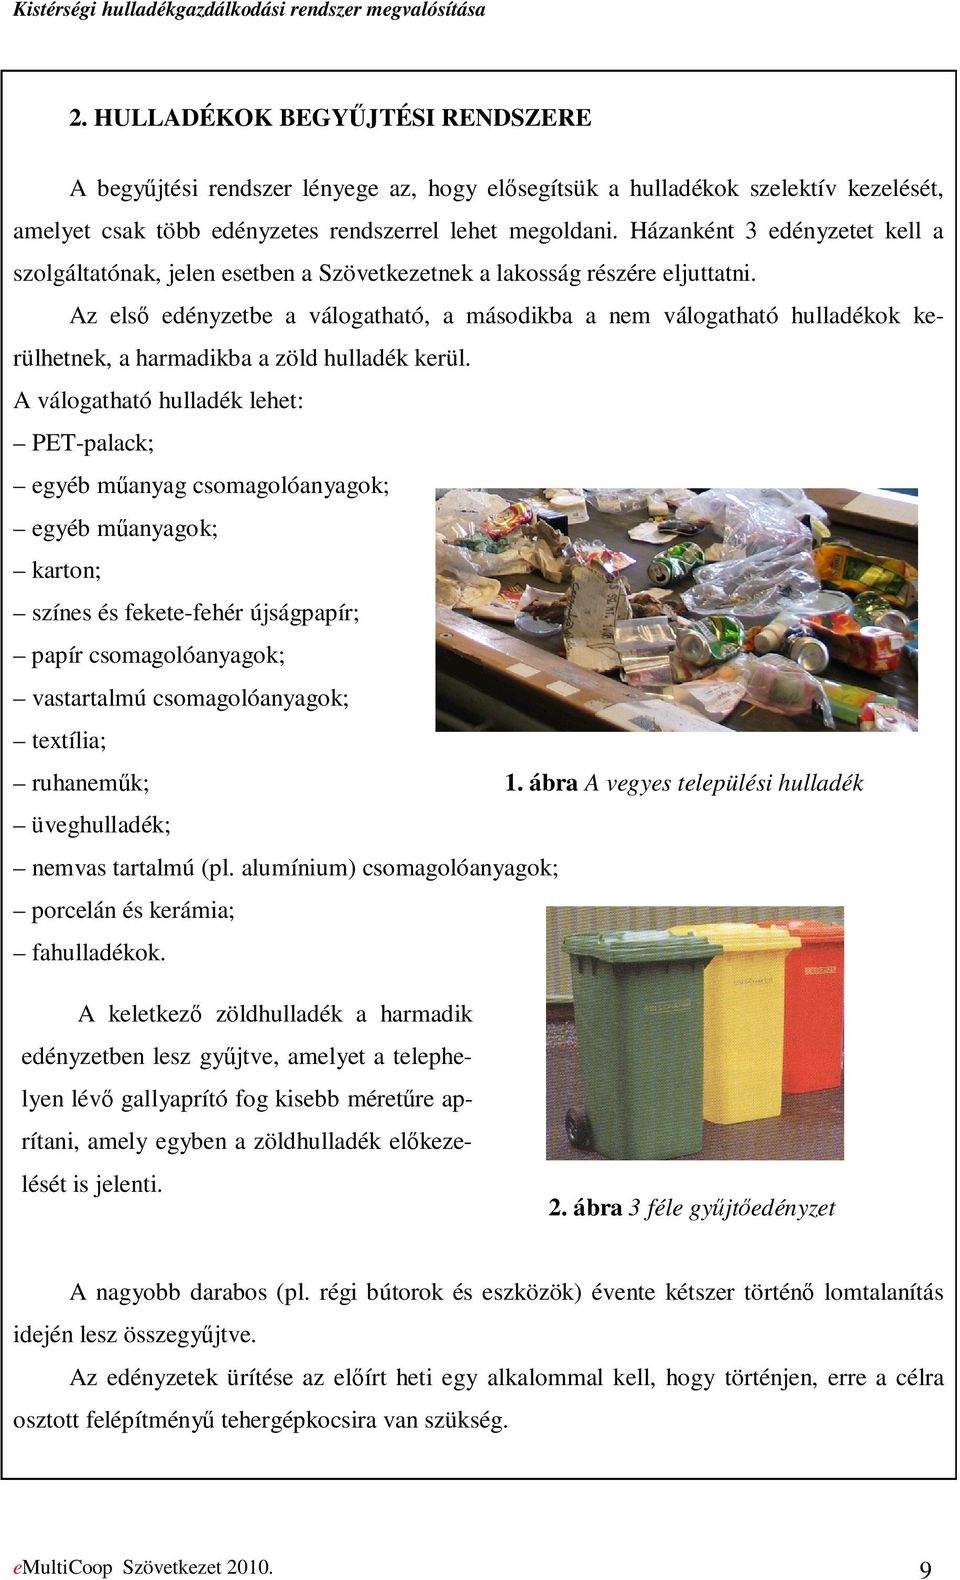 Az elsı edényzetbe a válogatható, a másodikba a nem válogatható hulladékok kerülhetnek, a harmadikba a zöld hulladék kerül.